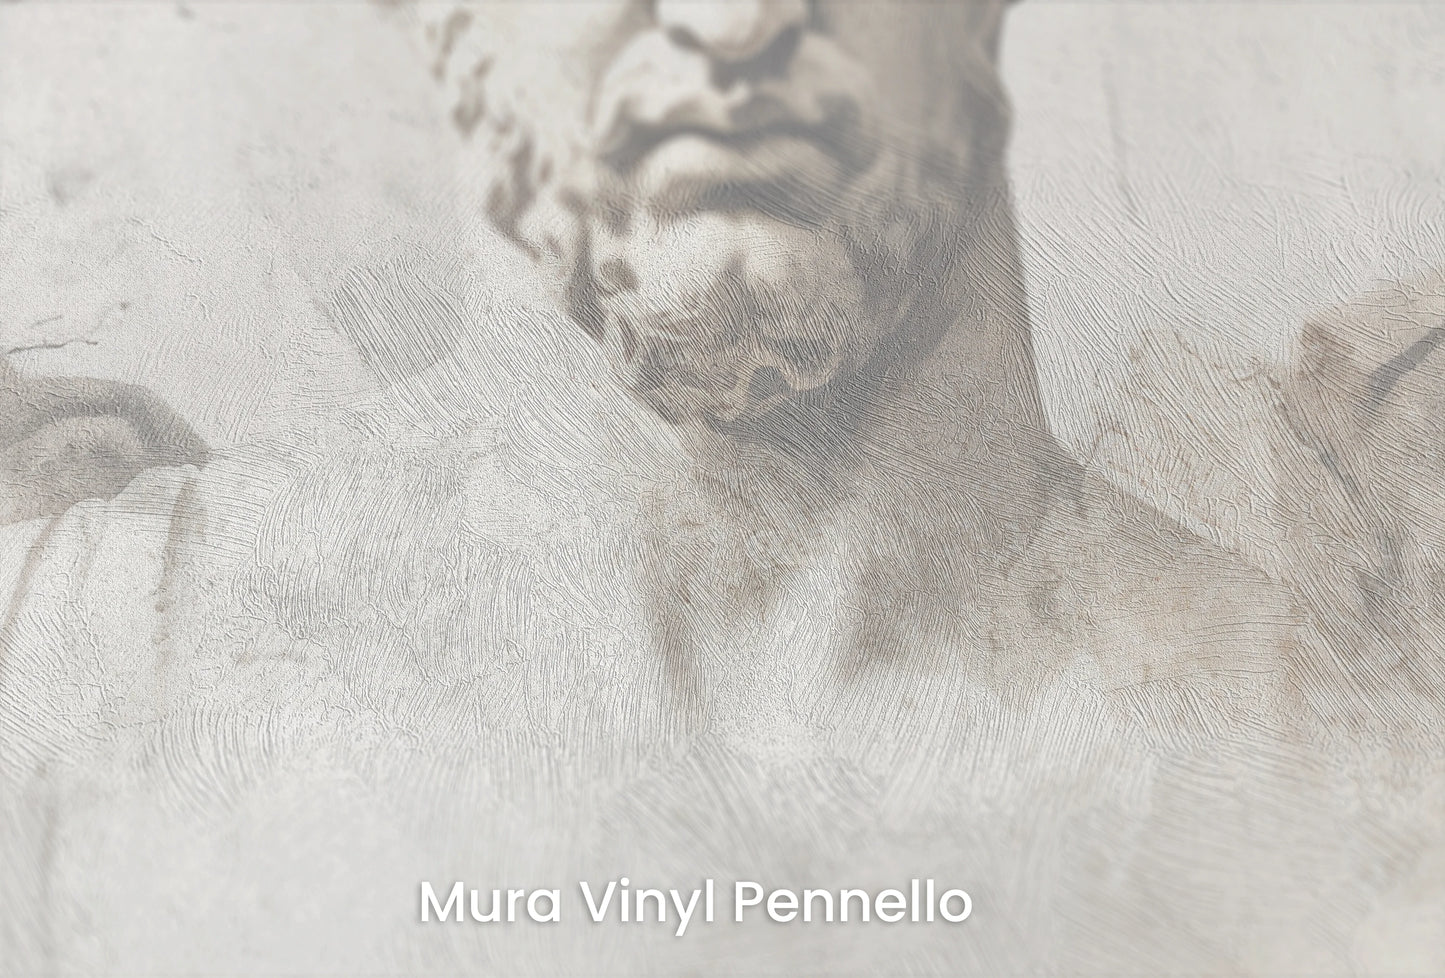 Zbliżenie na artystyczną fototapetę o nazwie Apollo's Melody na podłożu Mura Vinyl Pennello - faktura pociągnięć pędzla malarskiego.